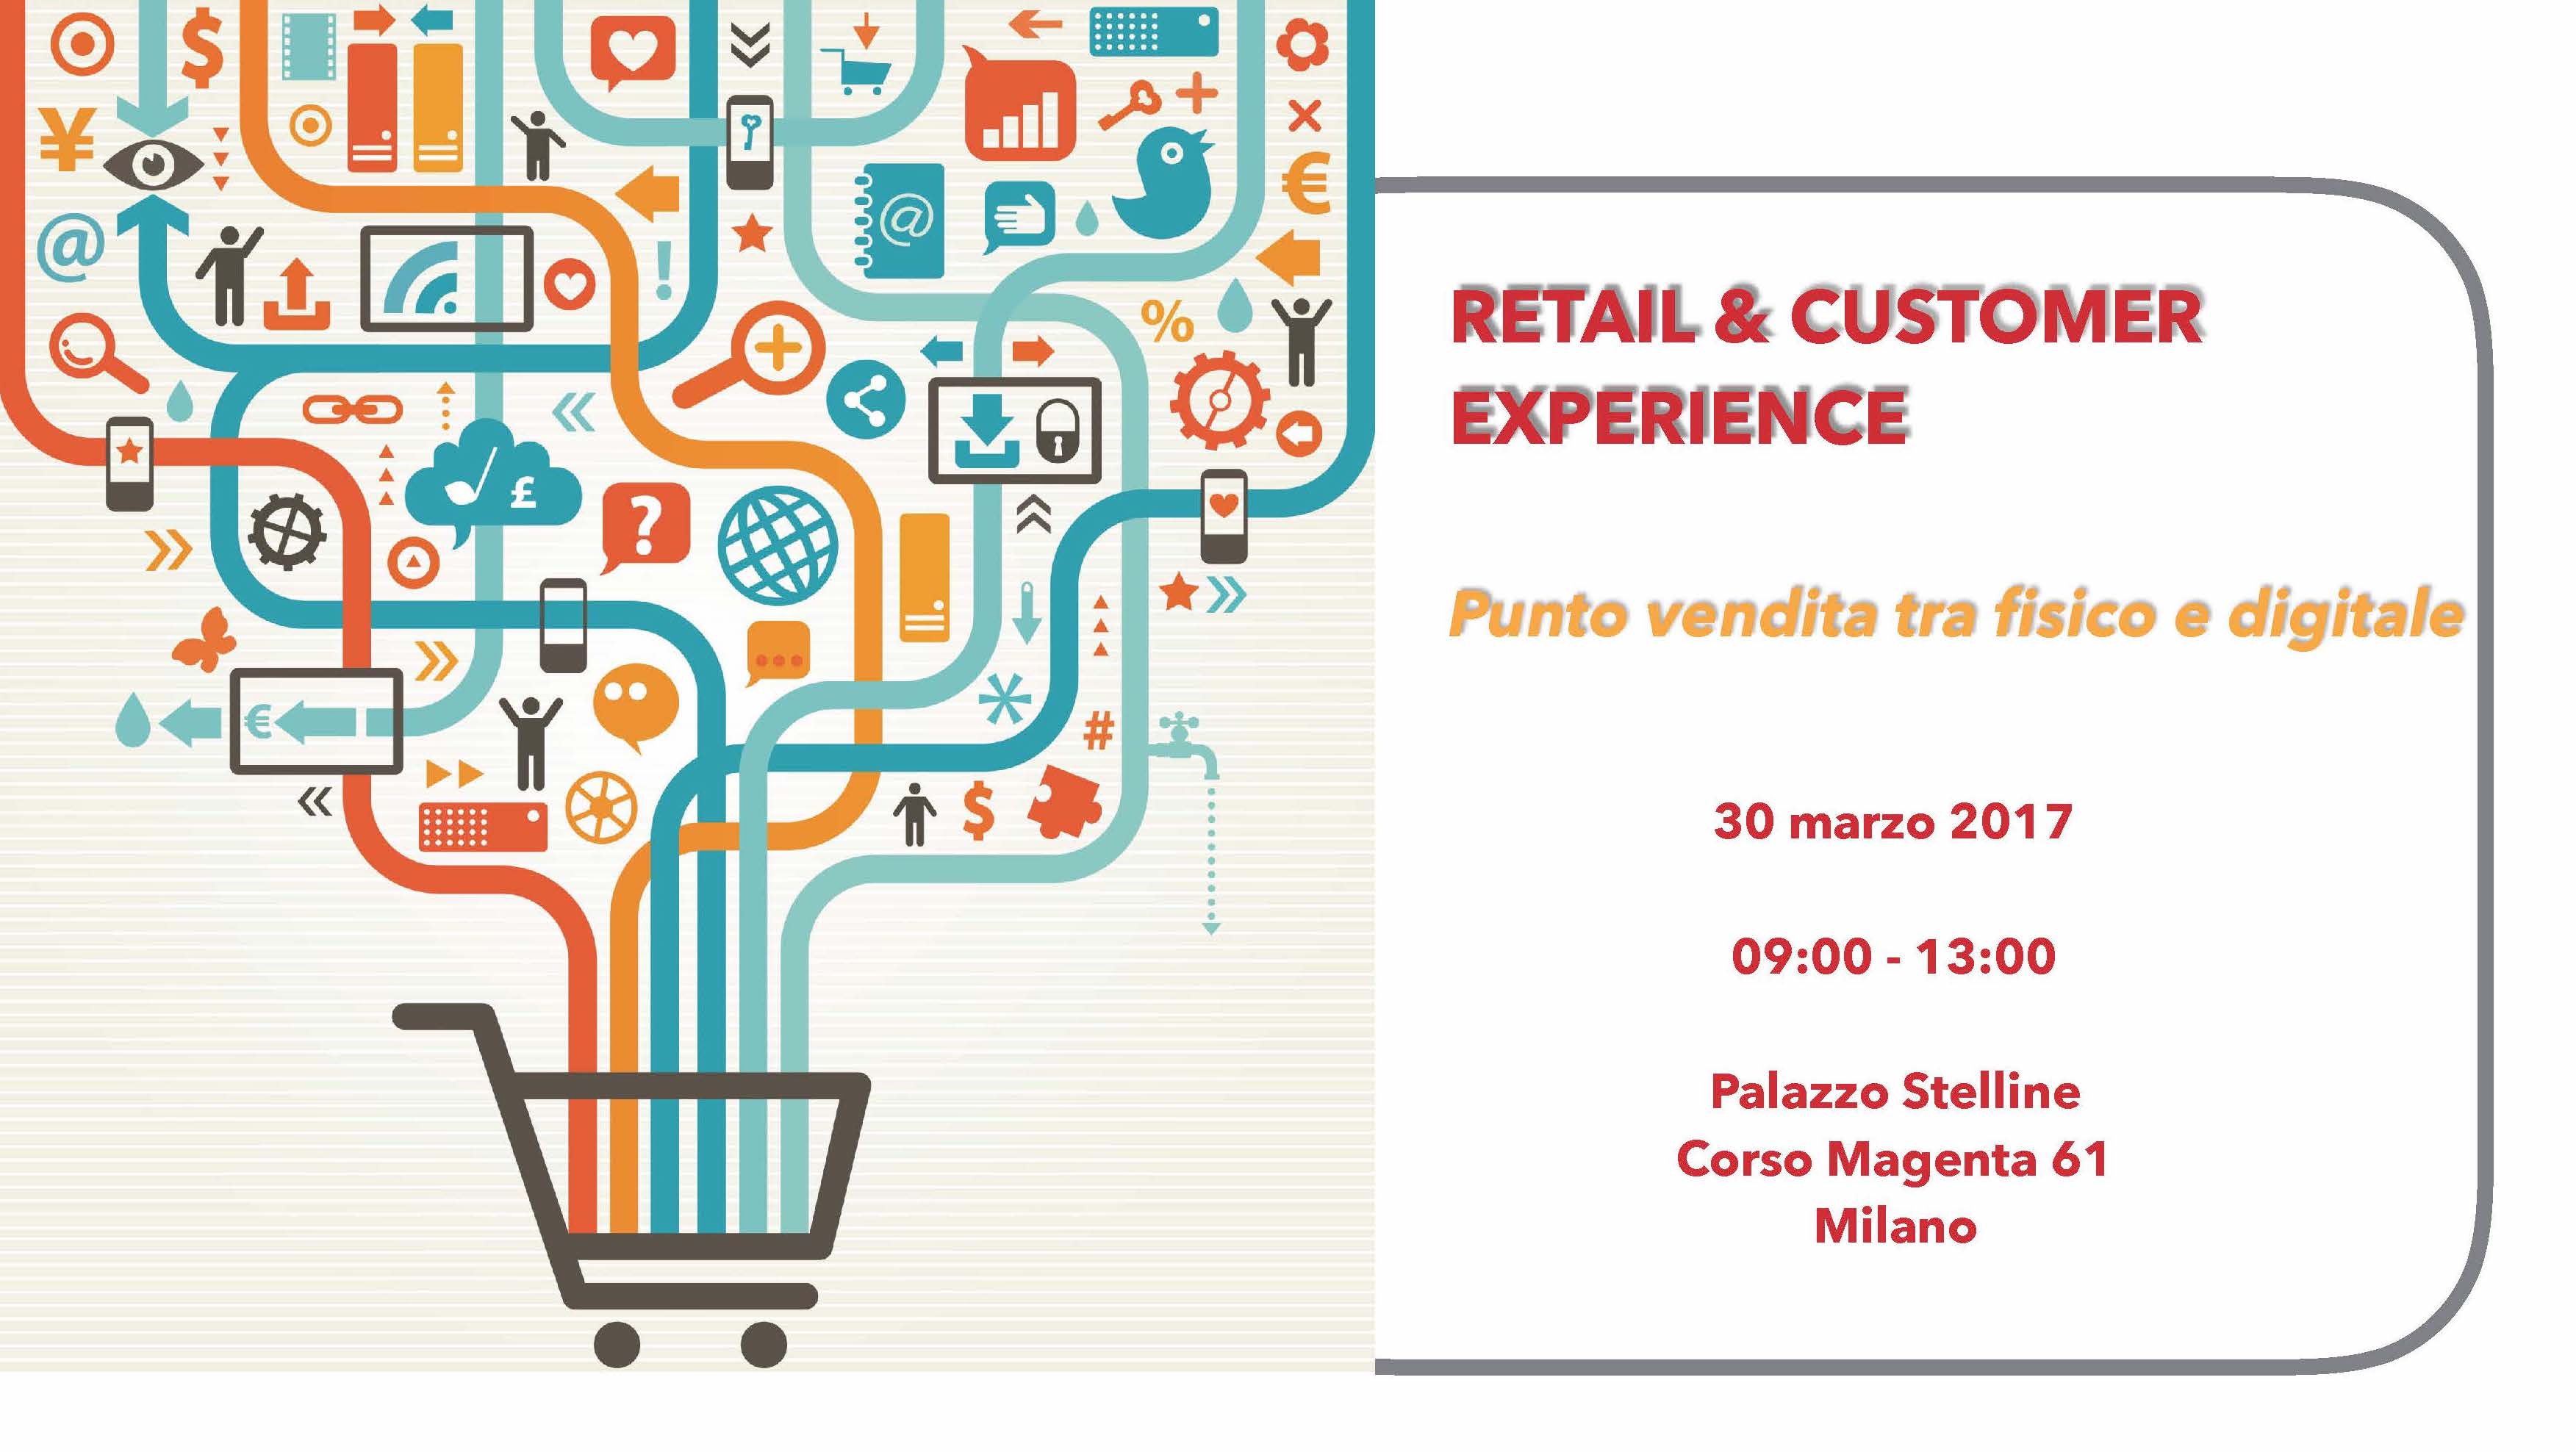 Atti convegno Retail & Customer Experience tra digitale e fisico